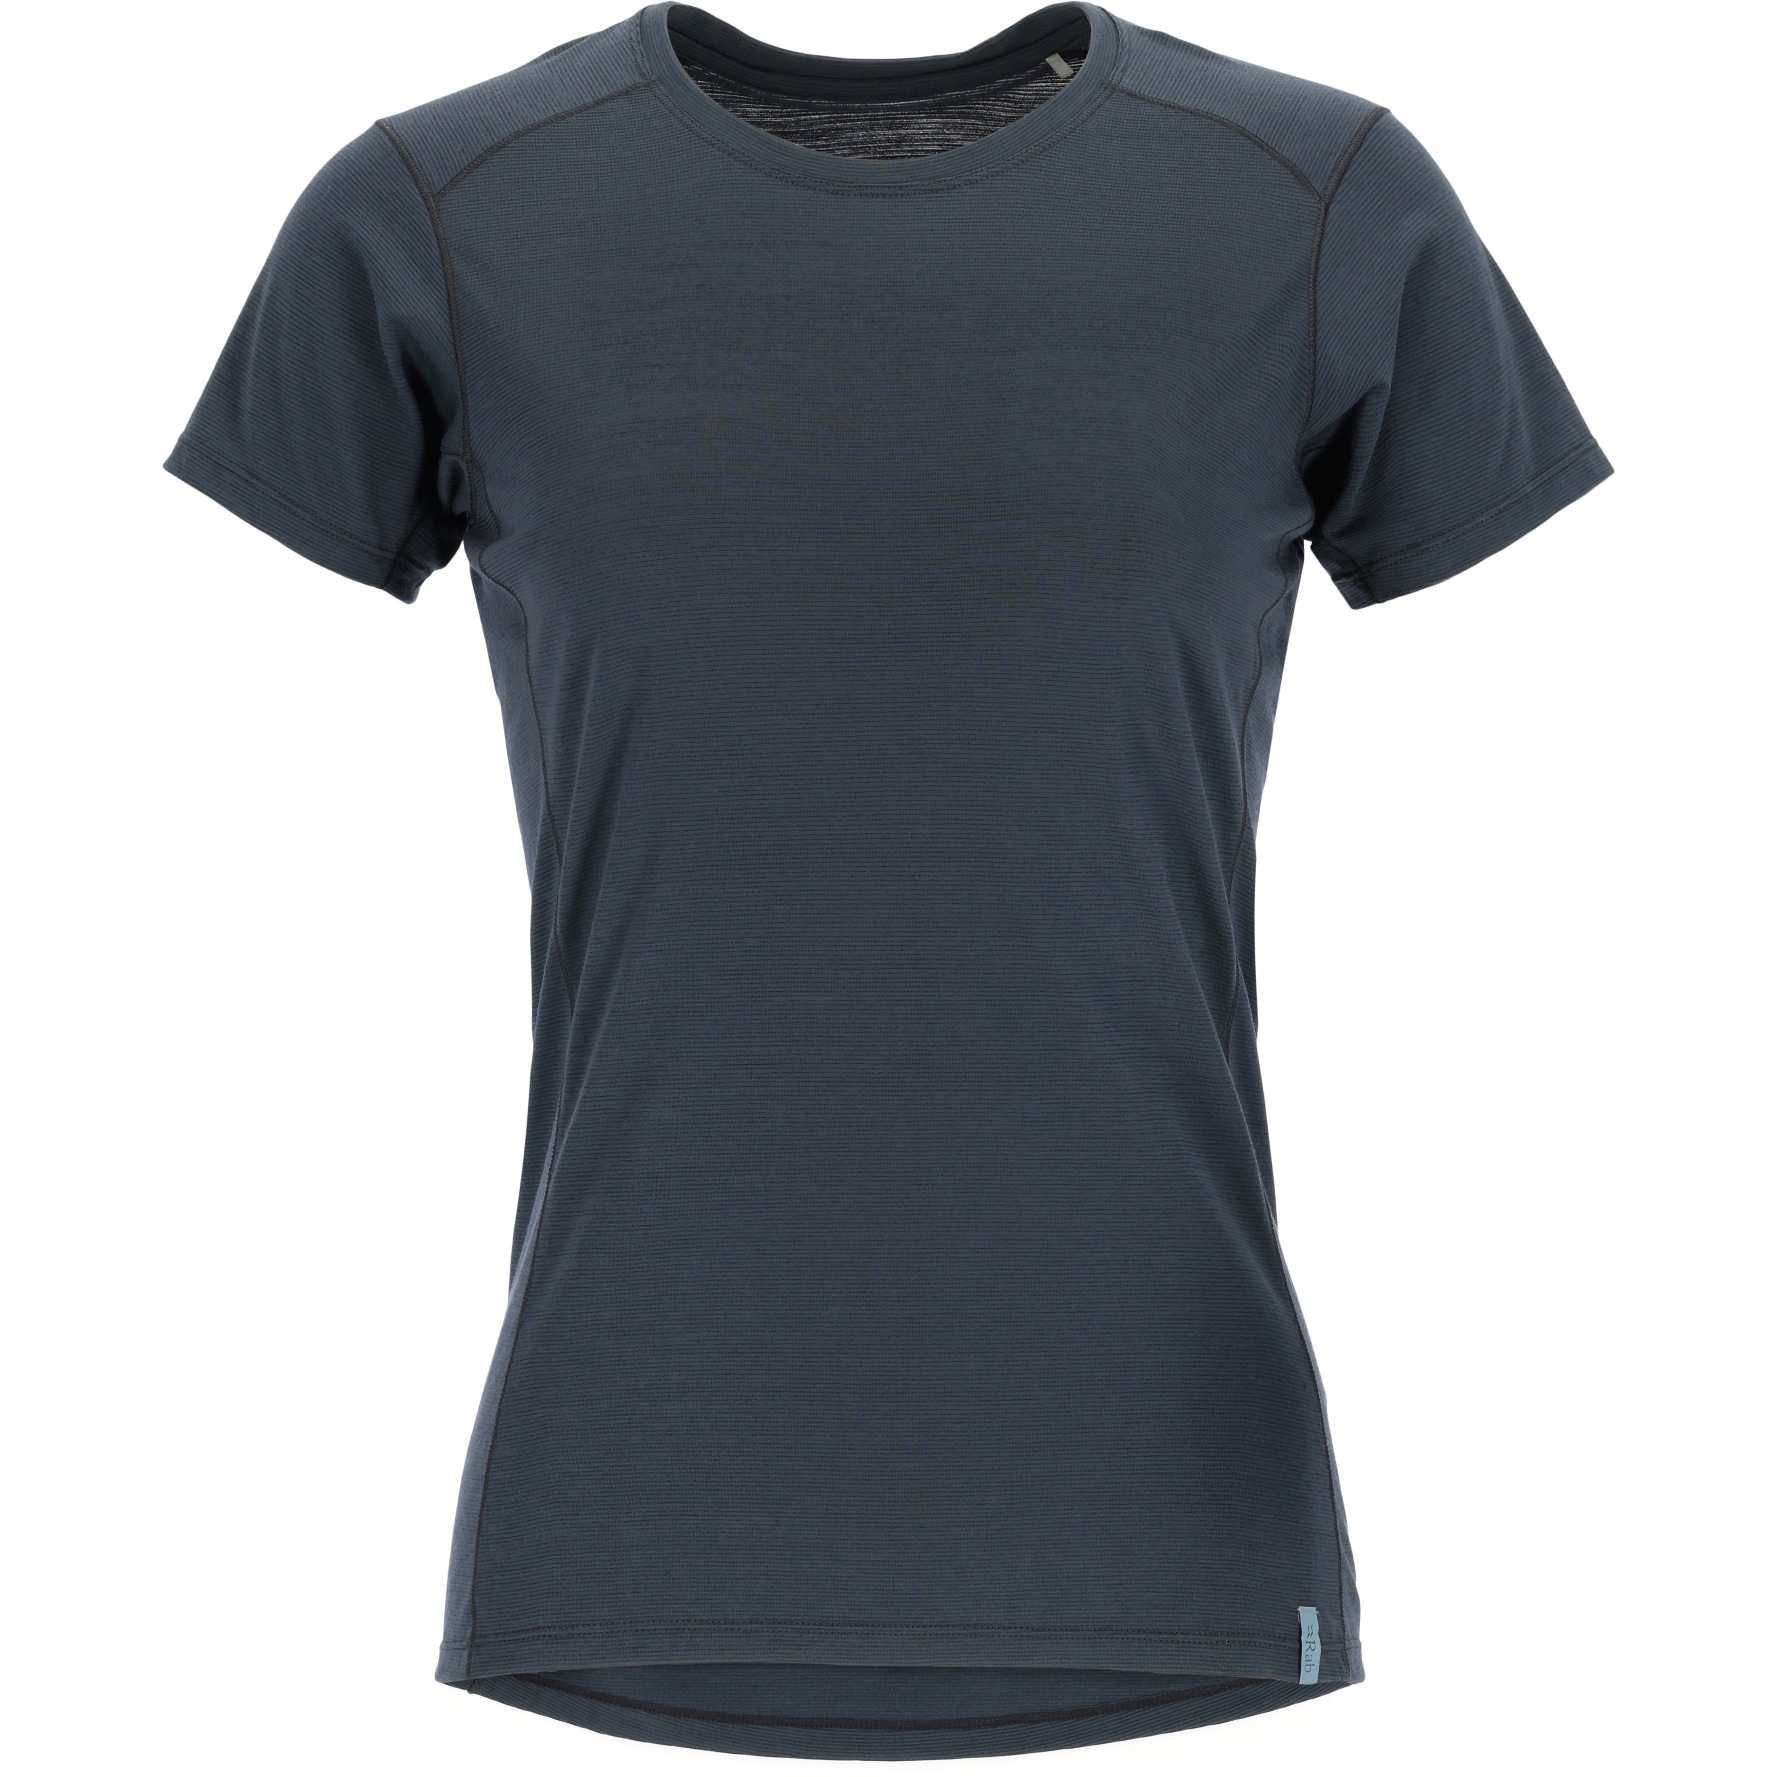 Produktbild von Rab Syncrino Base T-Shirt Damen - beluga